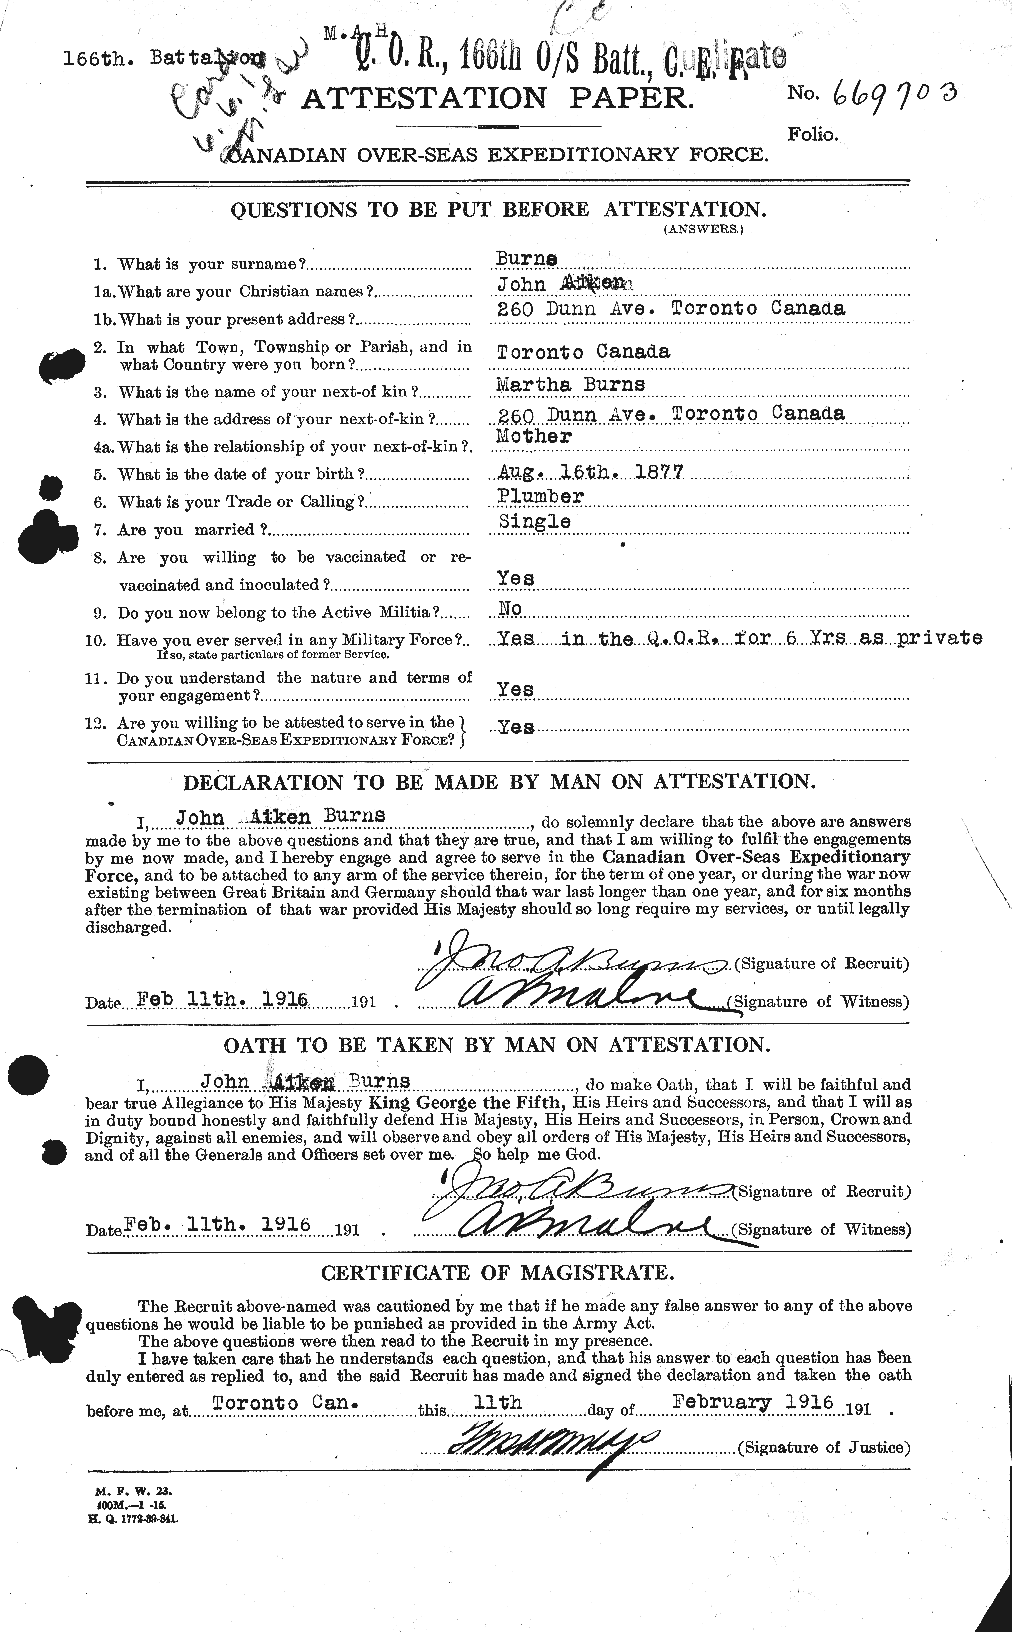 Dossiers du Personnel de la Première Guerre mondiale - CEC 274287a